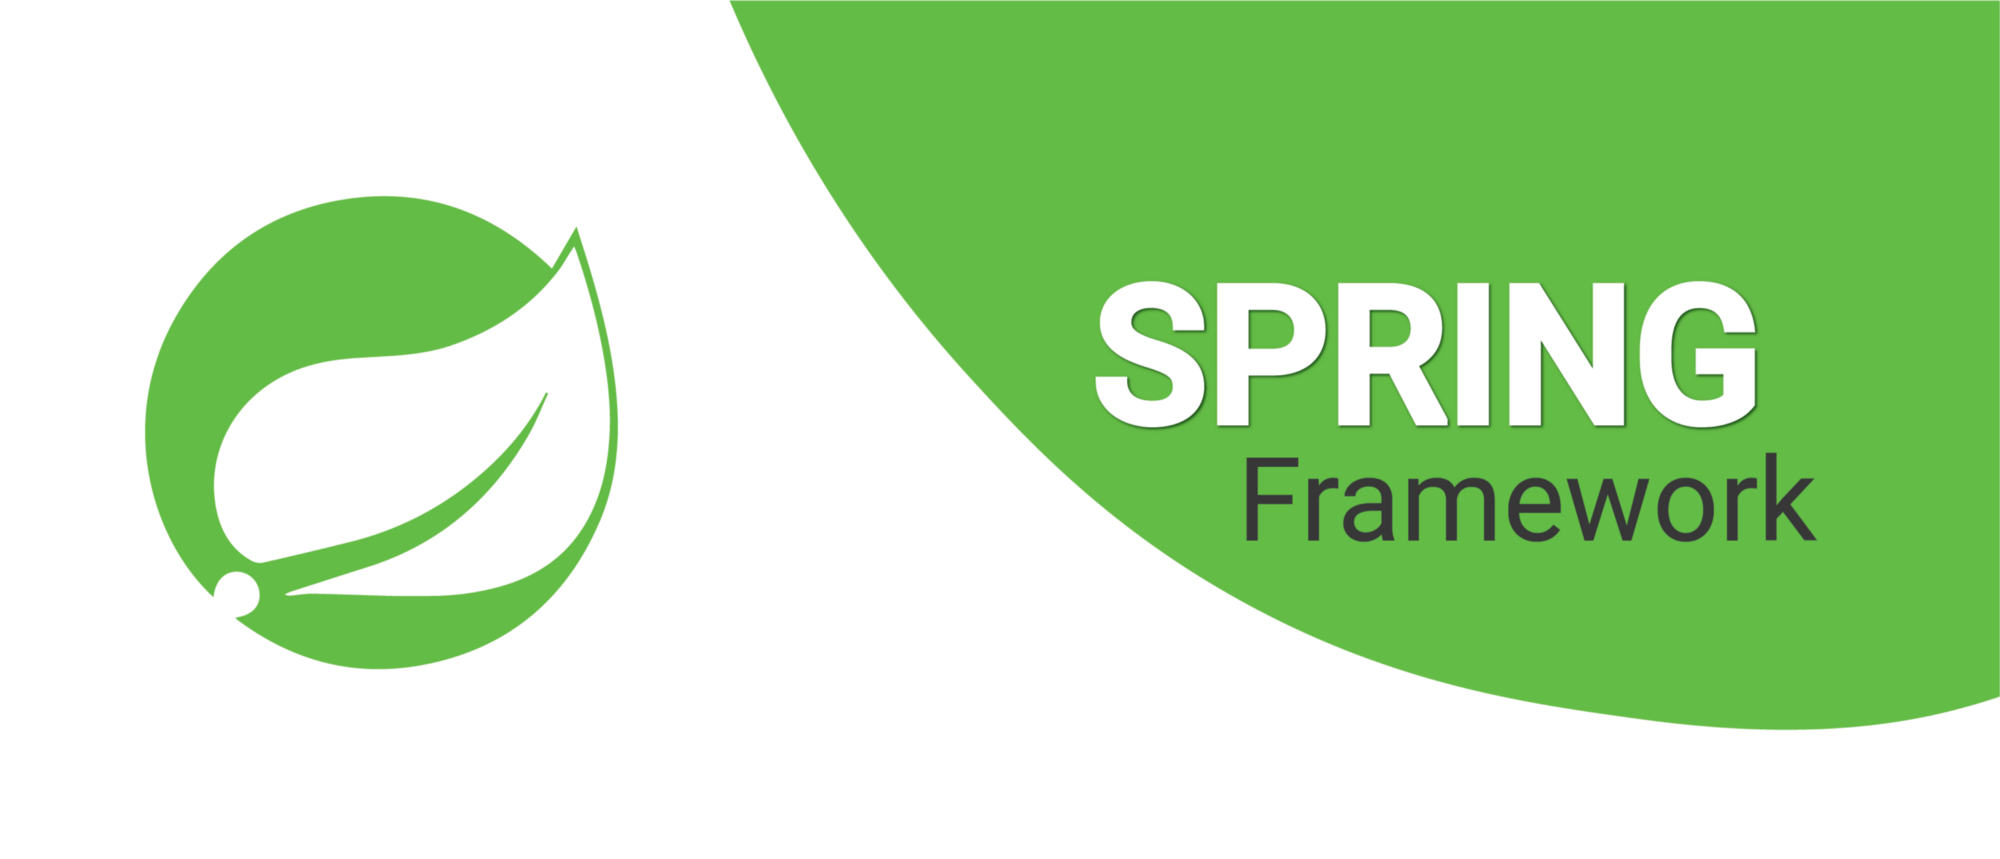 Spring Framework ¿Qué es y para qué sirve?